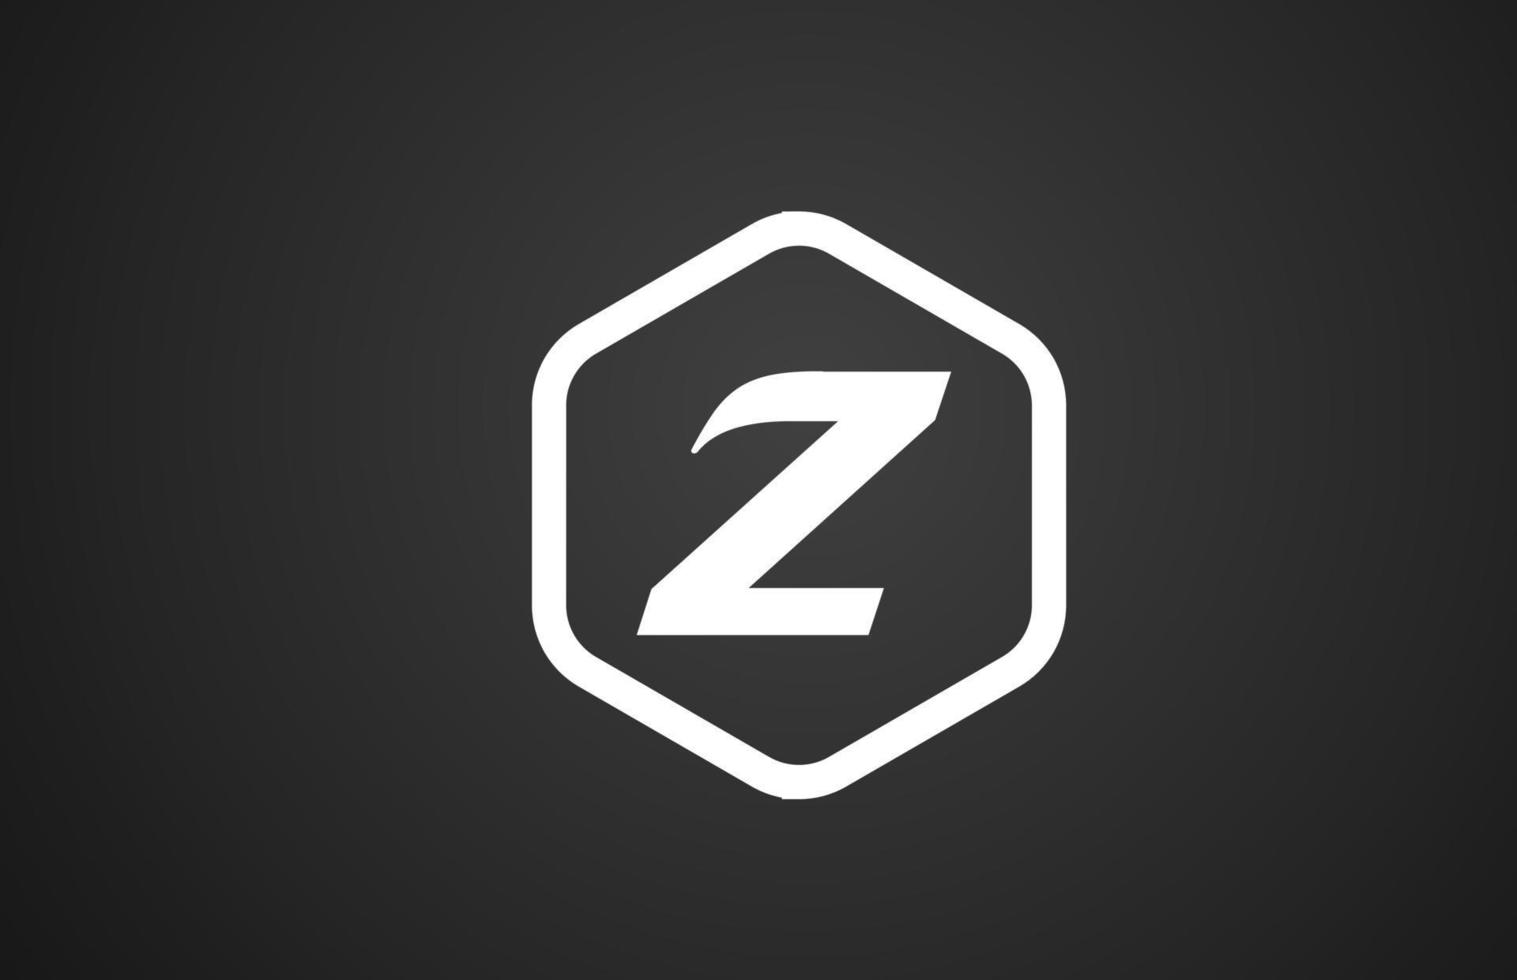 Z diseño de icono de logotipo de letra del alfabeto blanco y negro con rombo para negocios y empresa vector